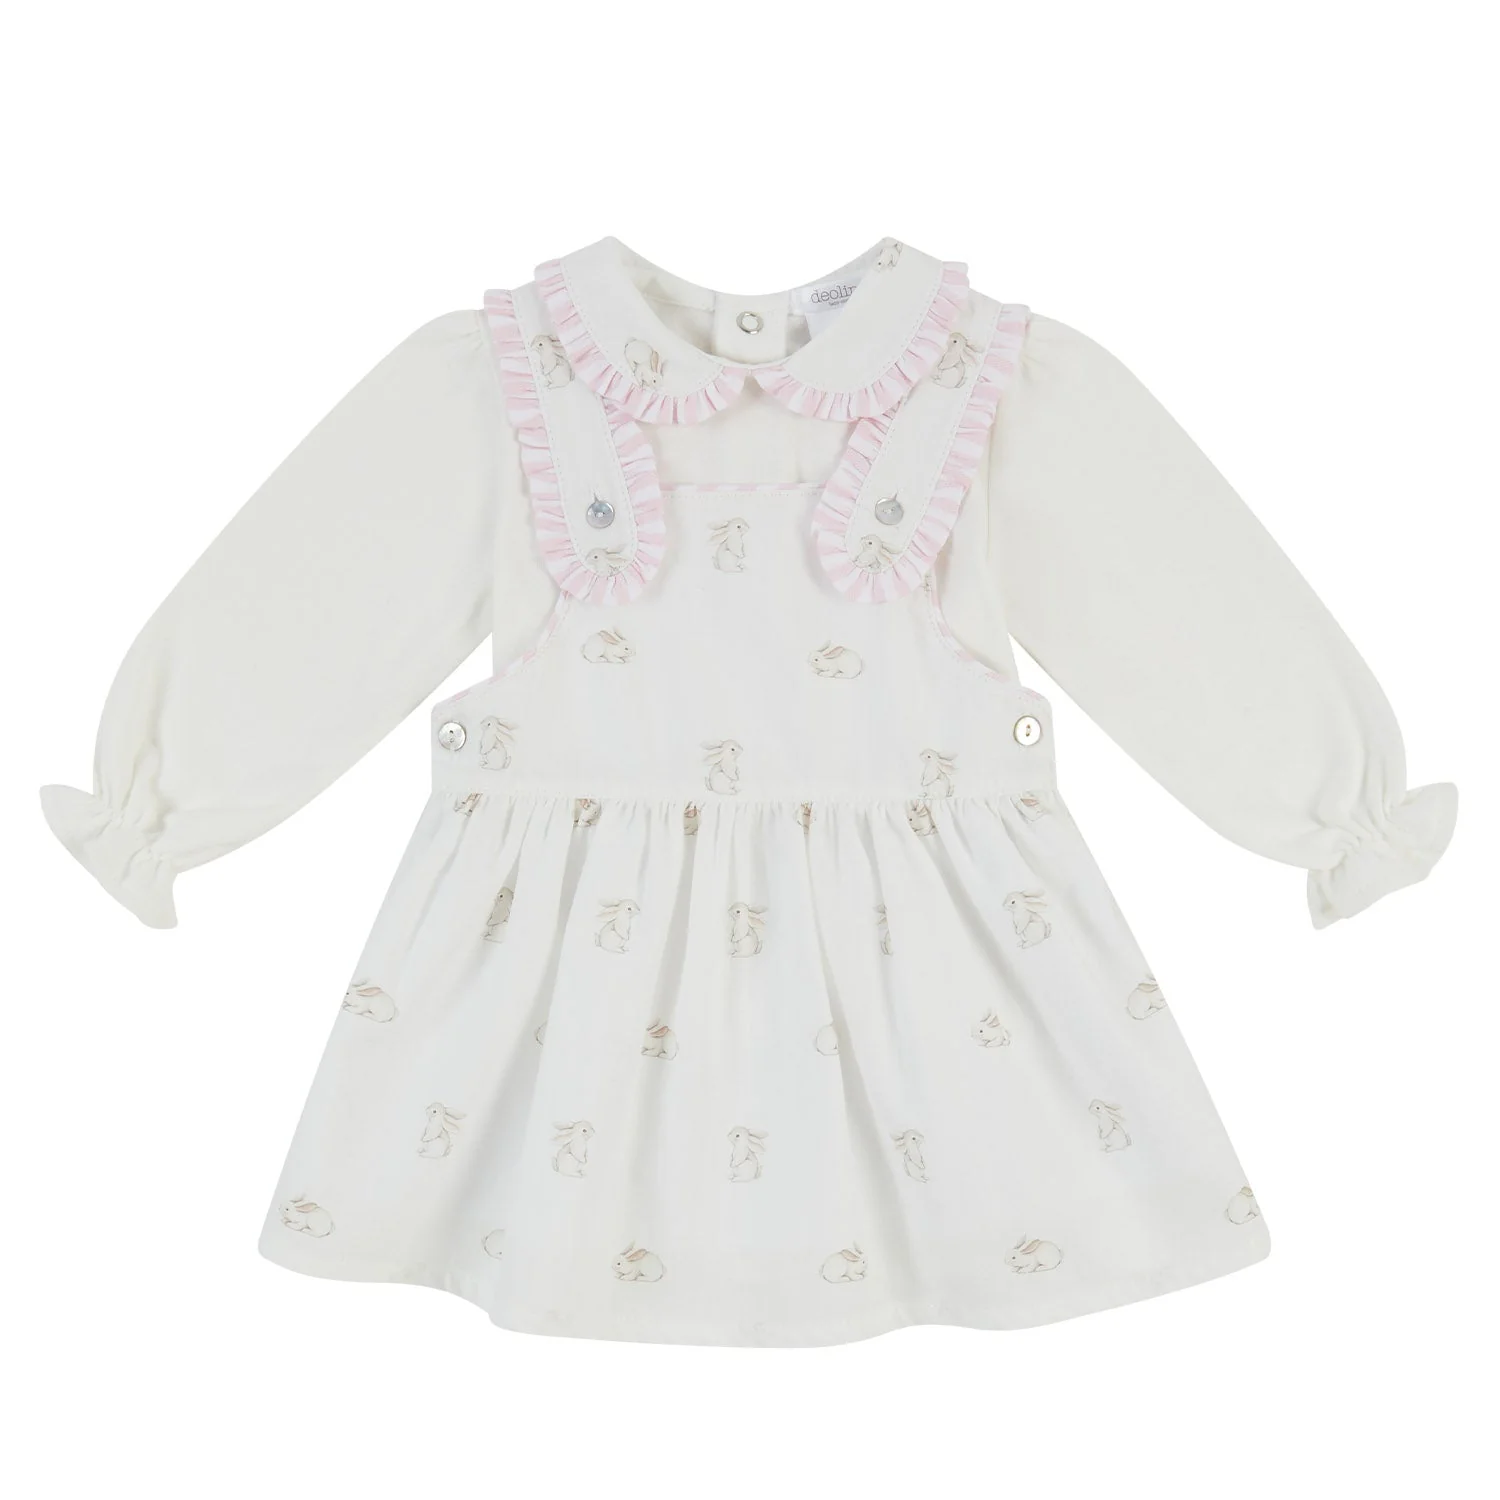 Deolinda Pink Bunny Rabbit Pinafore Dress & Top